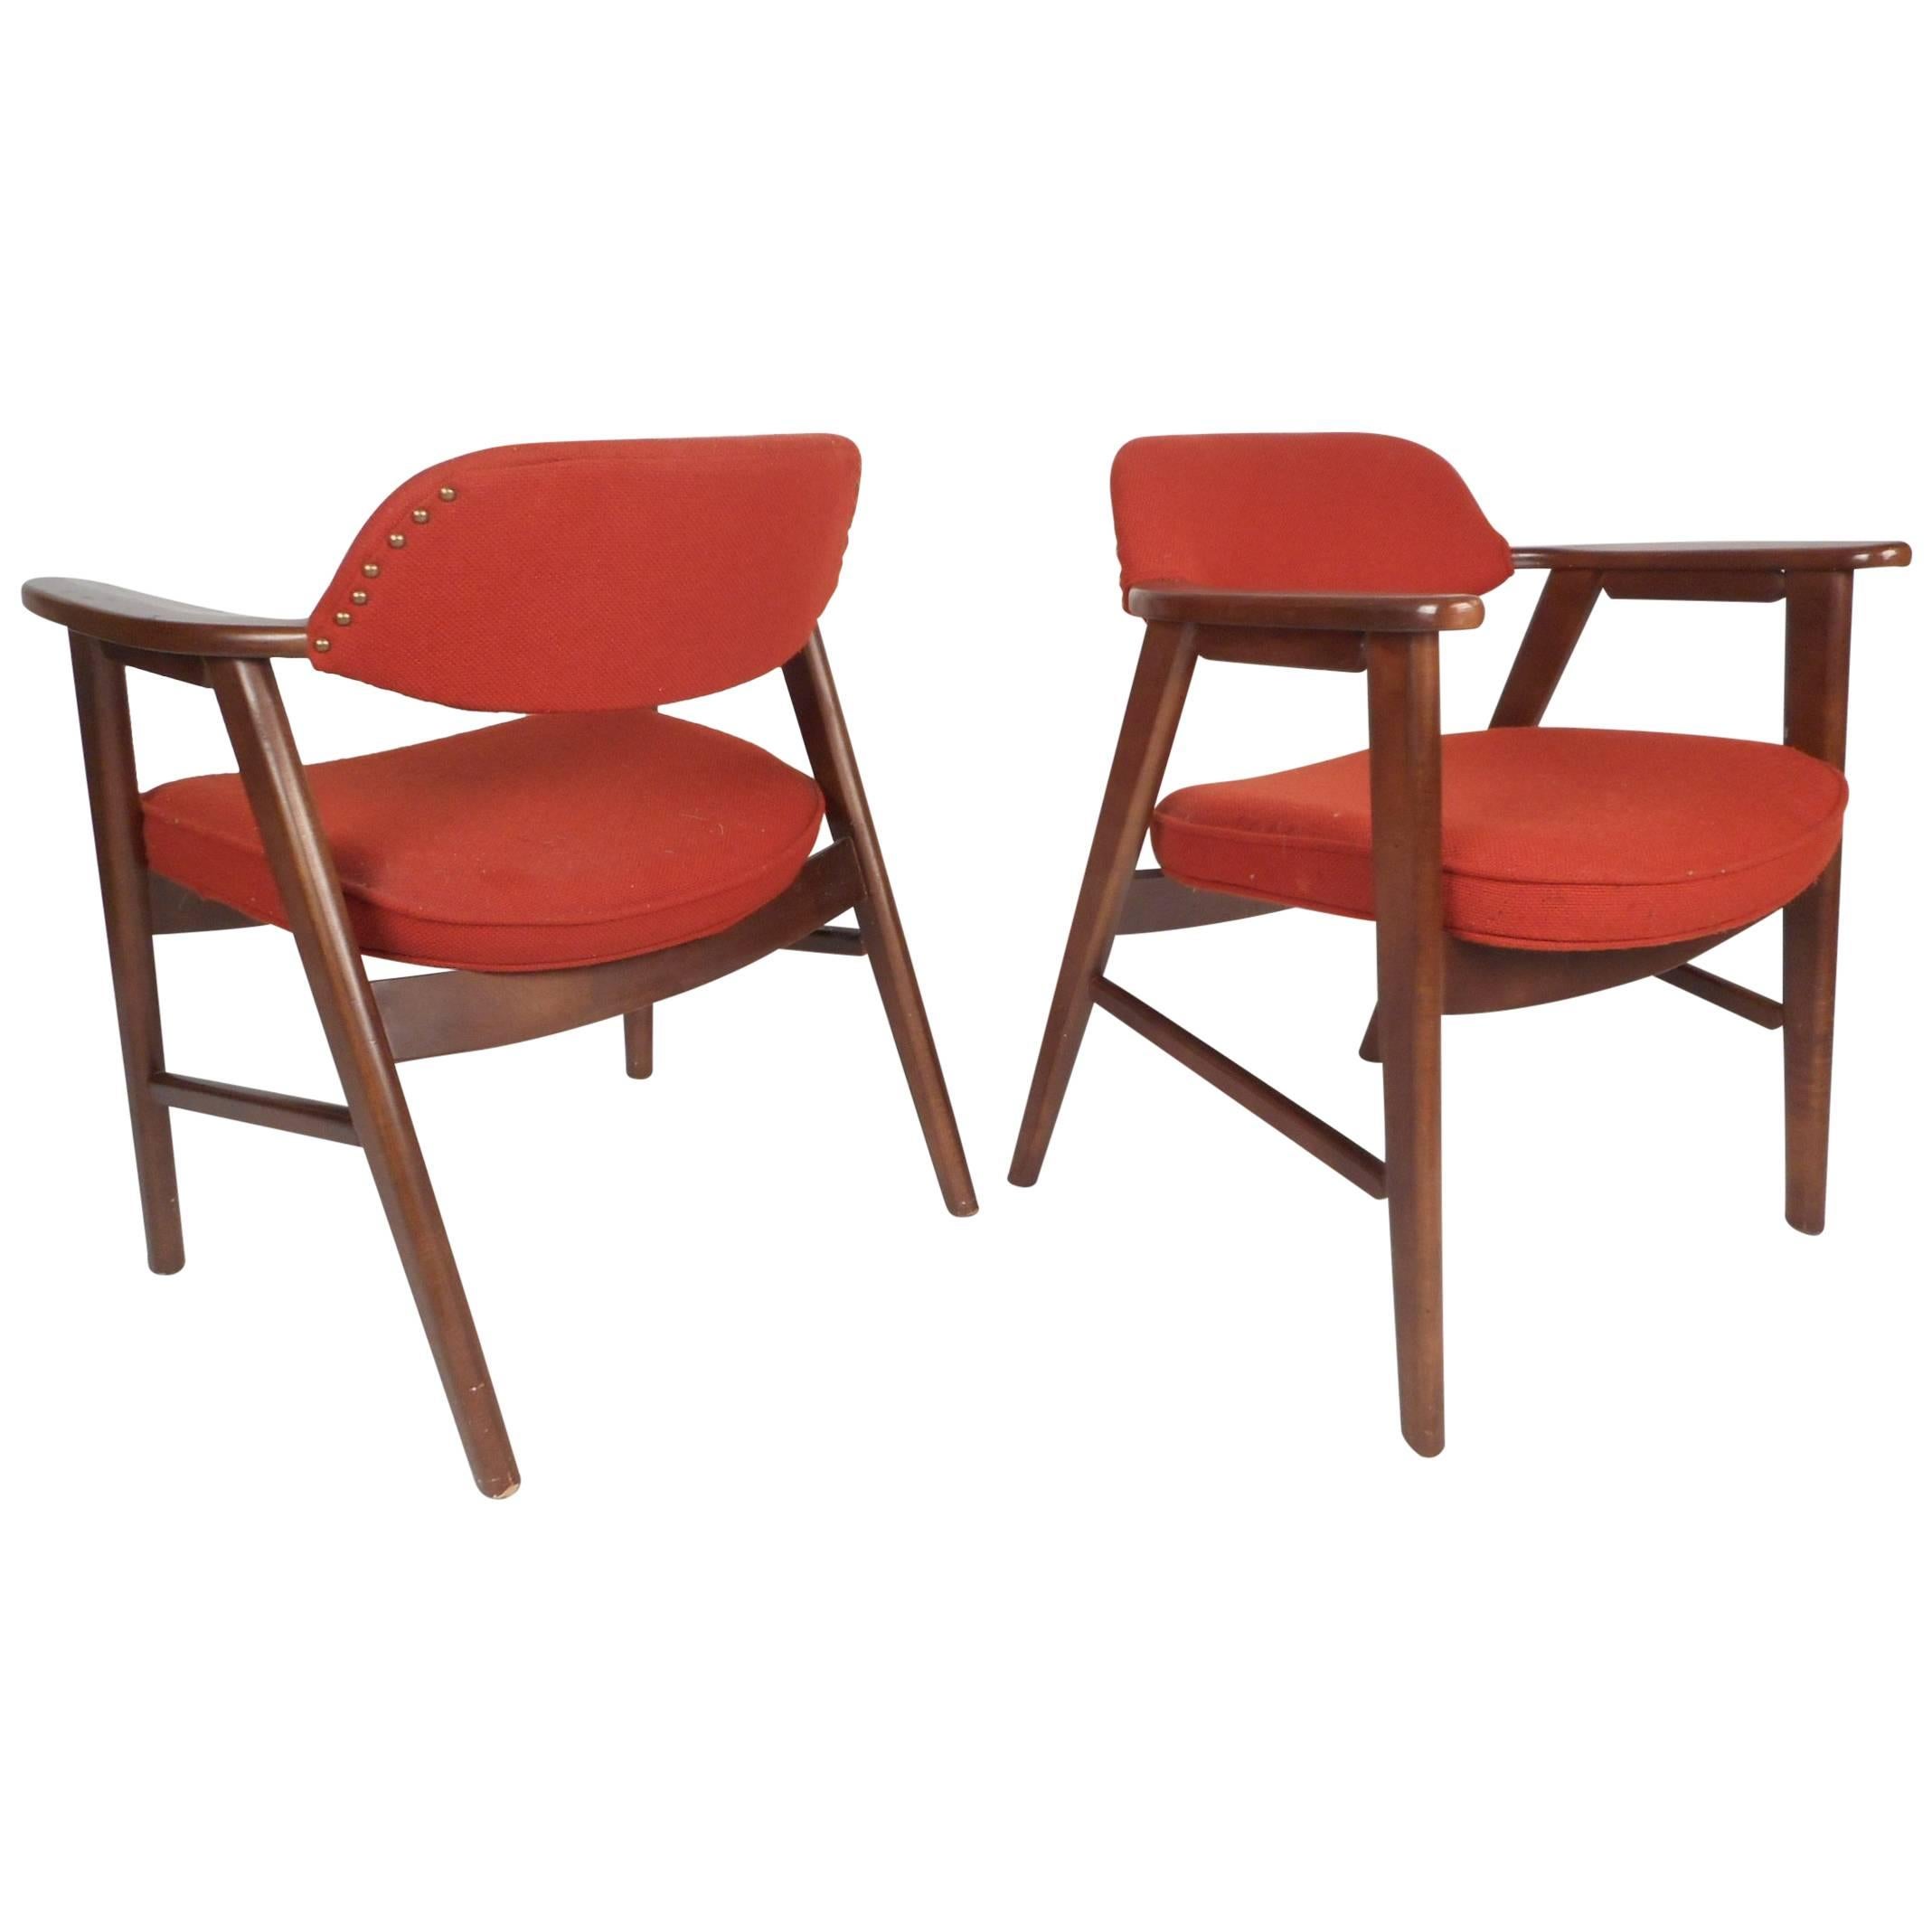 Pair of Scandinavian Modern Arm Chairs